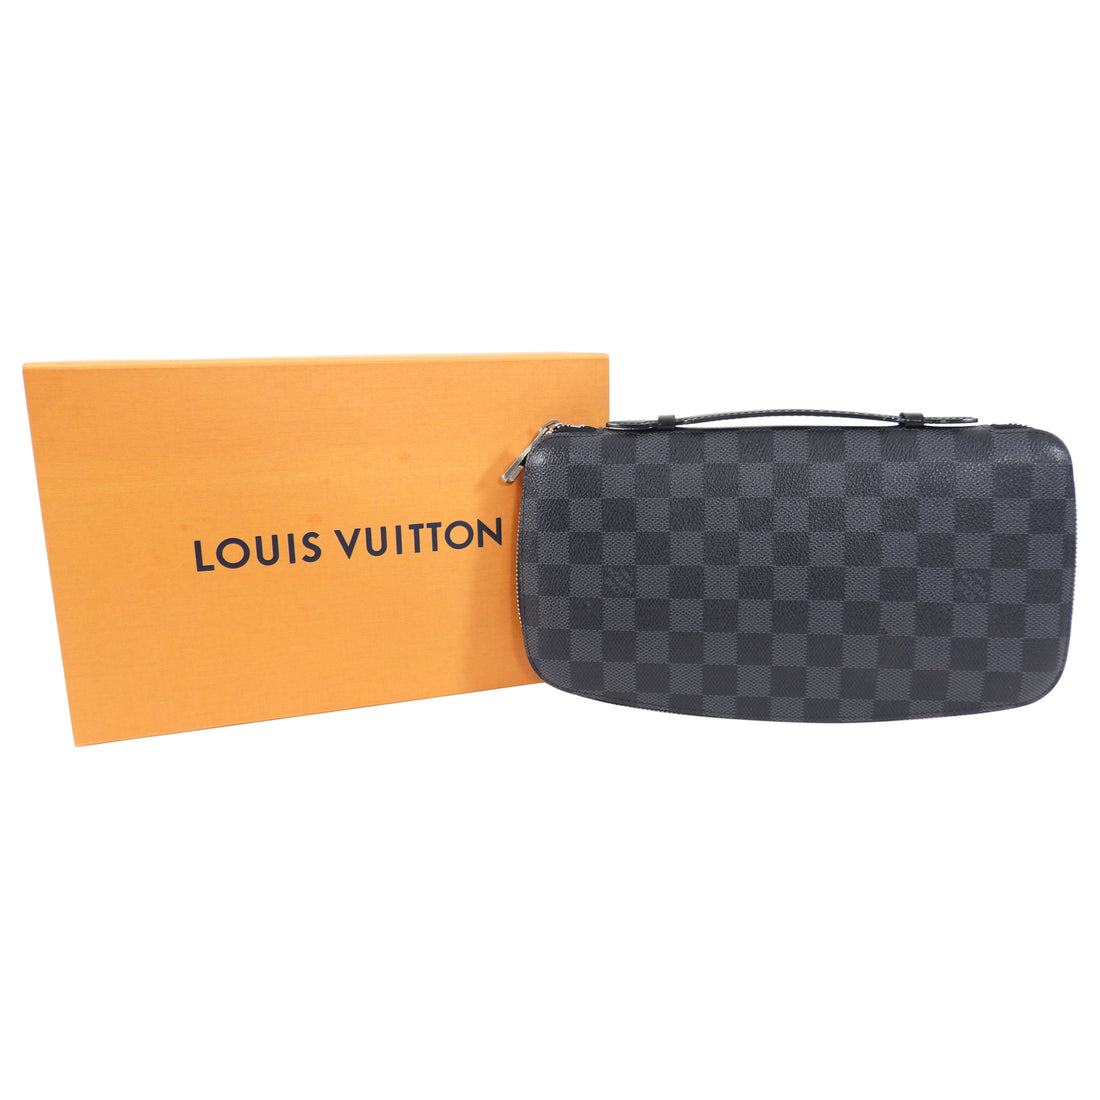 Louis Vuitton - Zippy Organizer ($875) - avail in monogram, damier